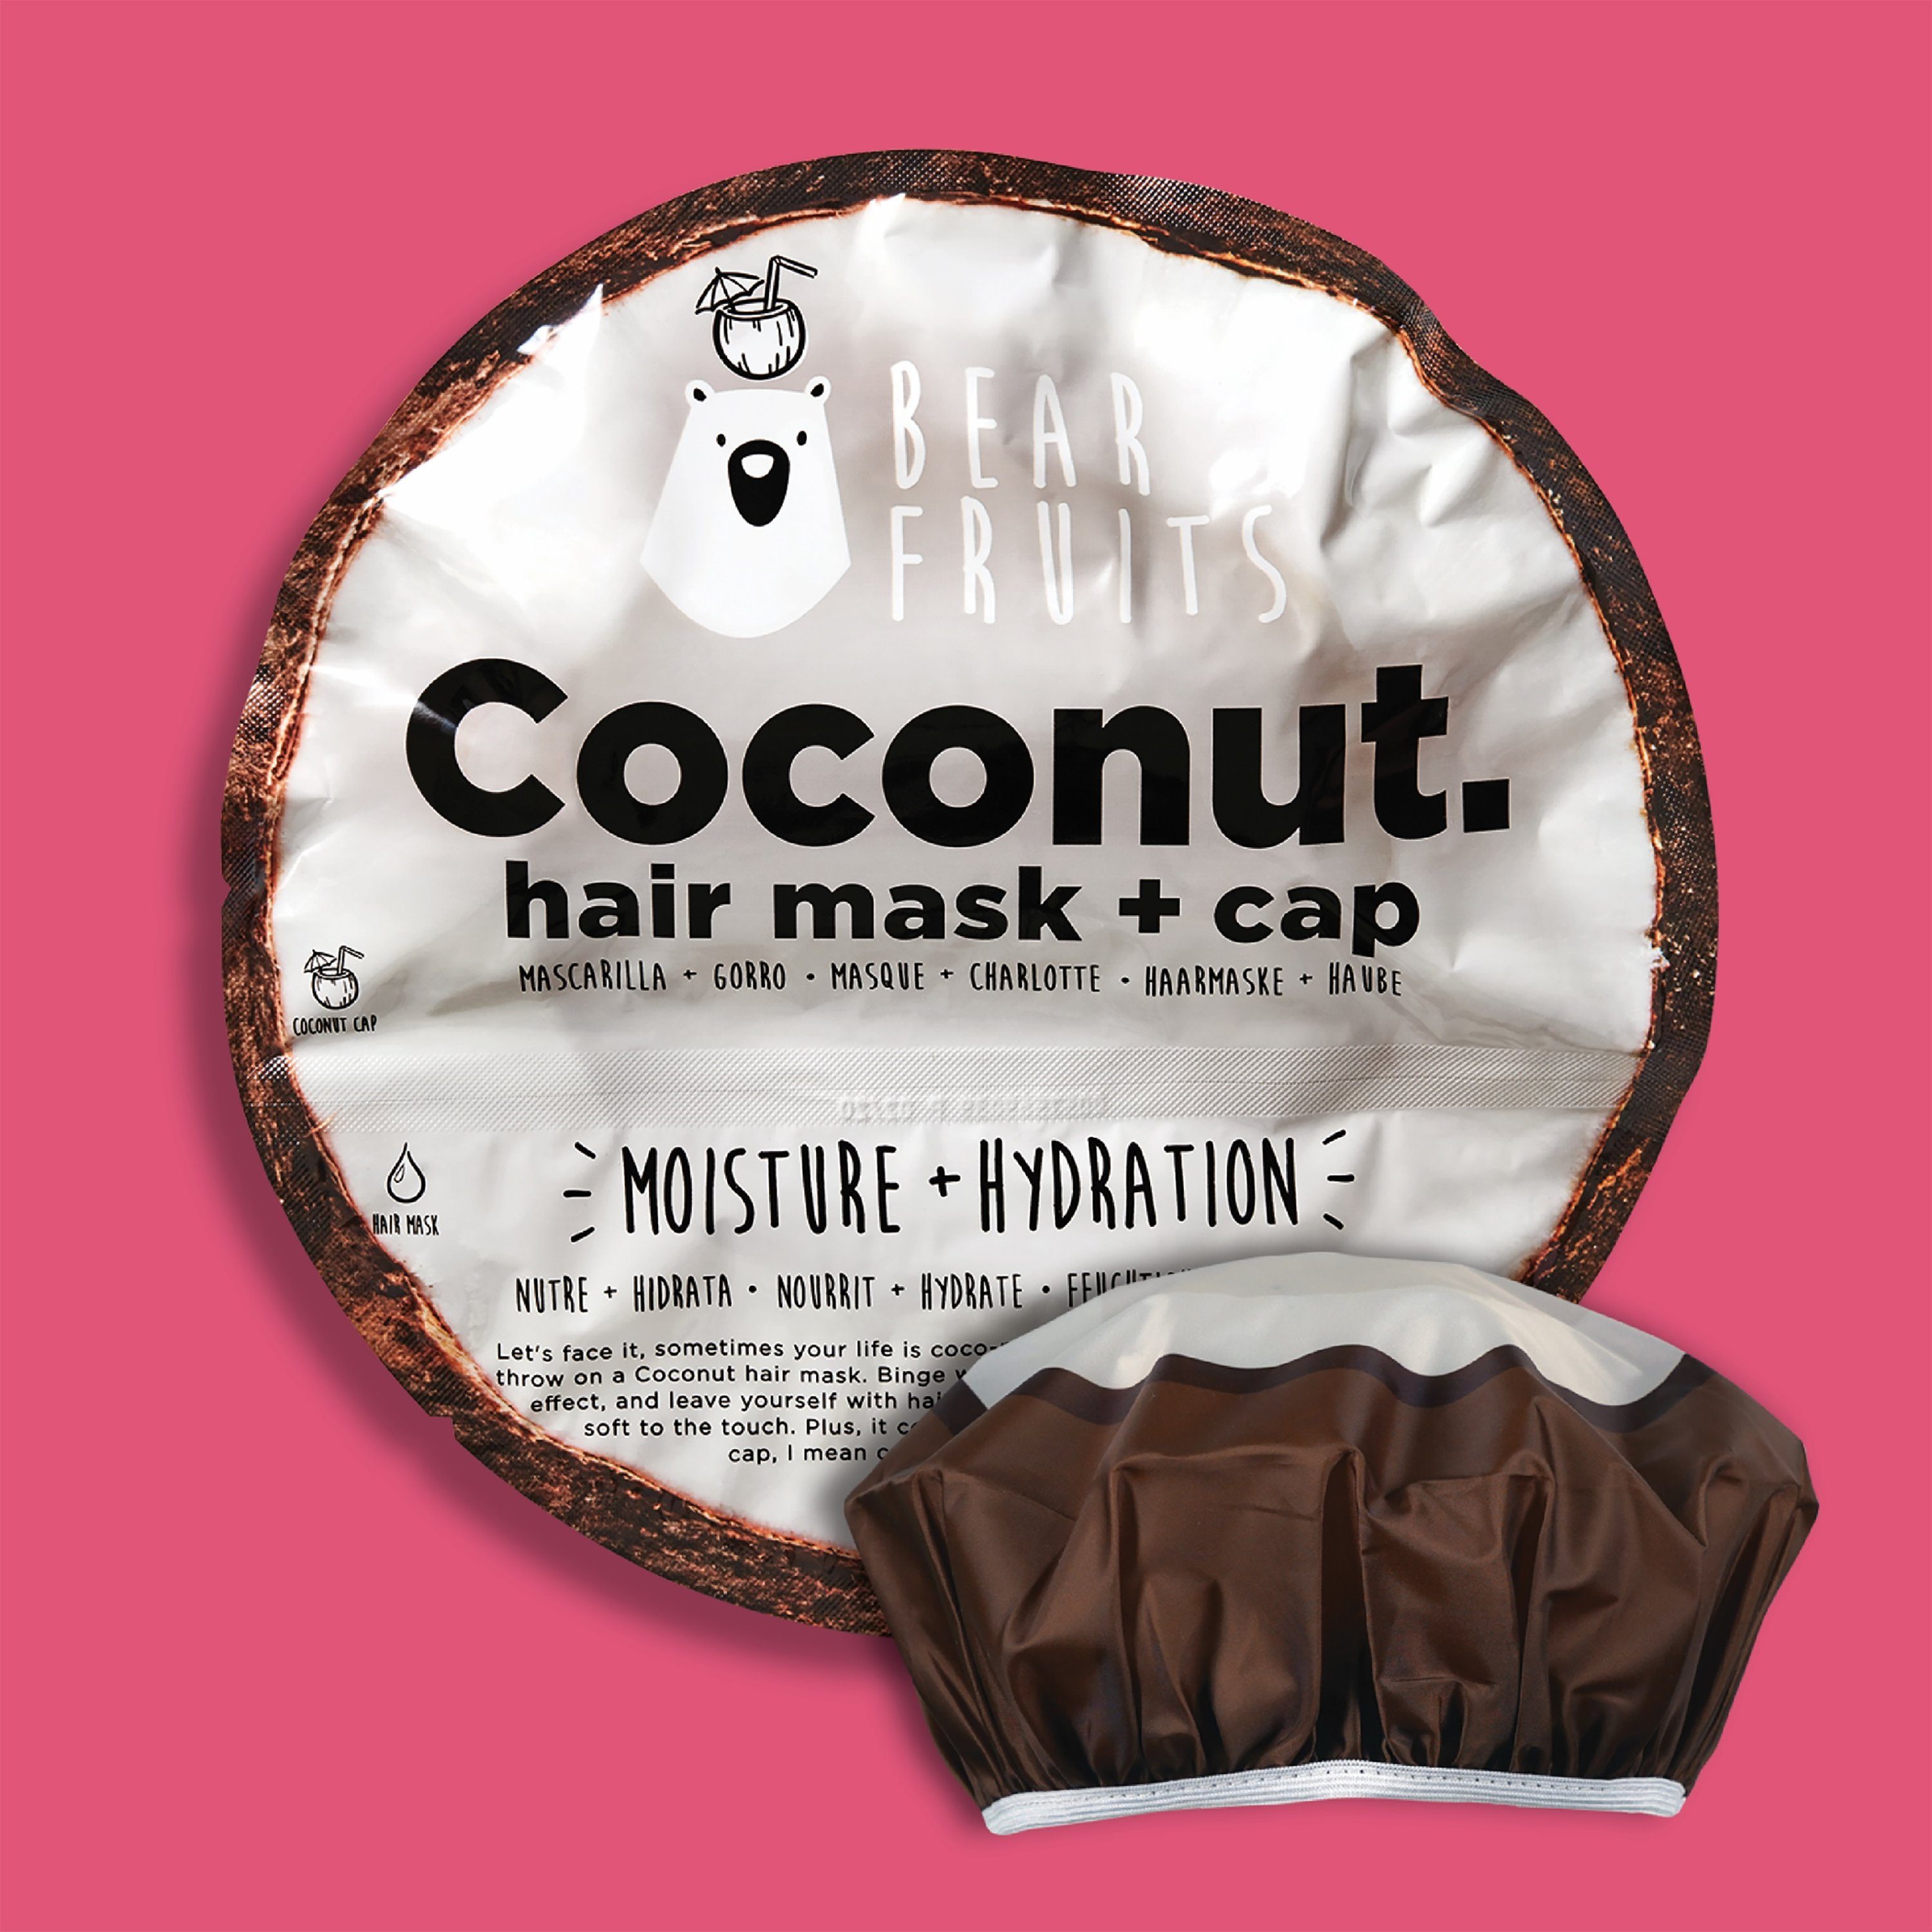 Bear Fruits Haarkur Coconut - Hair mask + cap